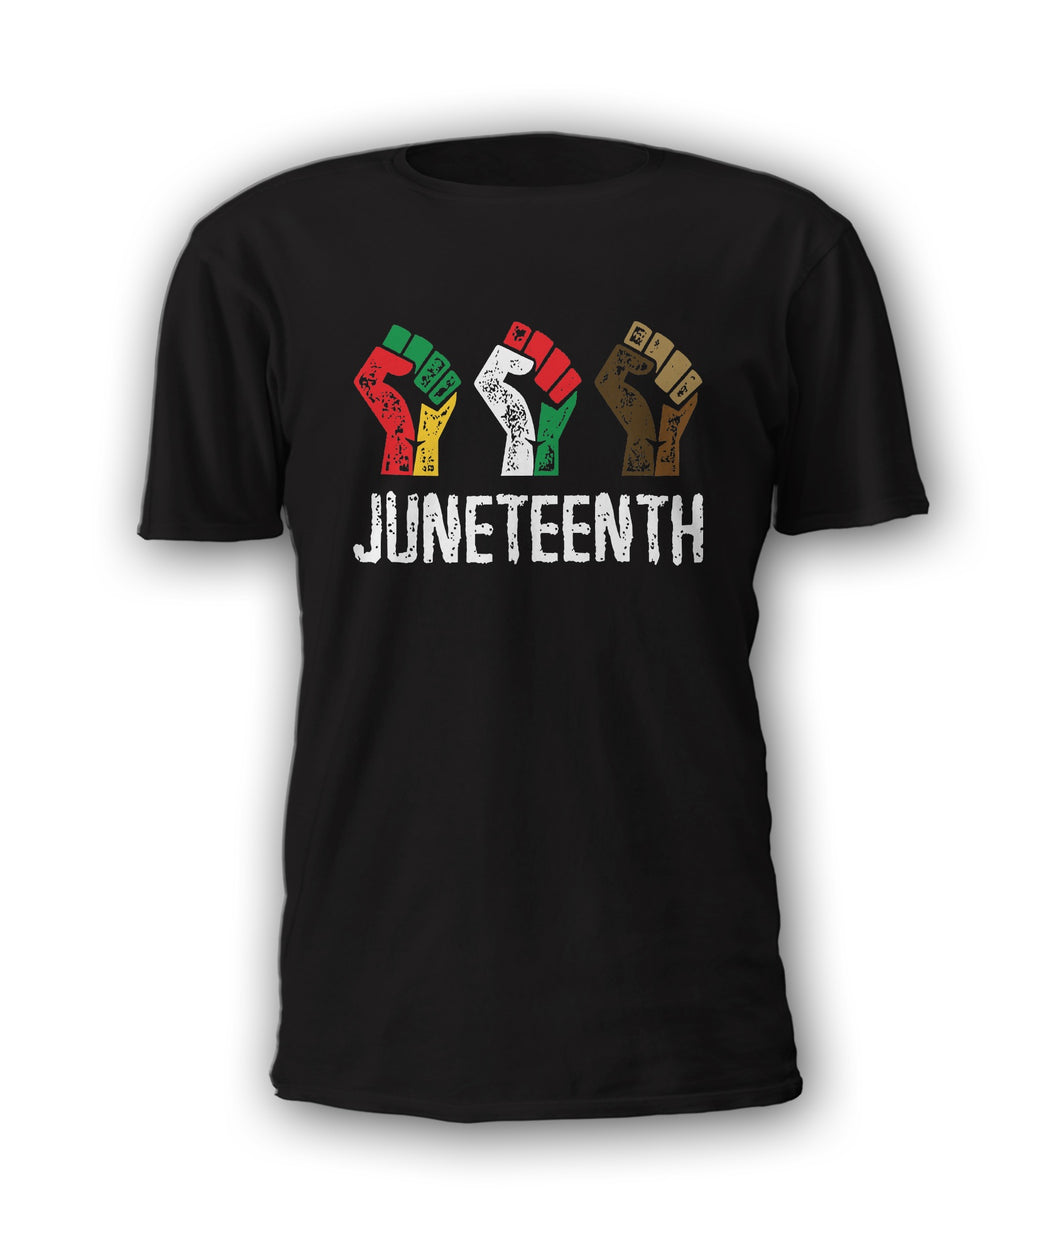 JuneTeenth